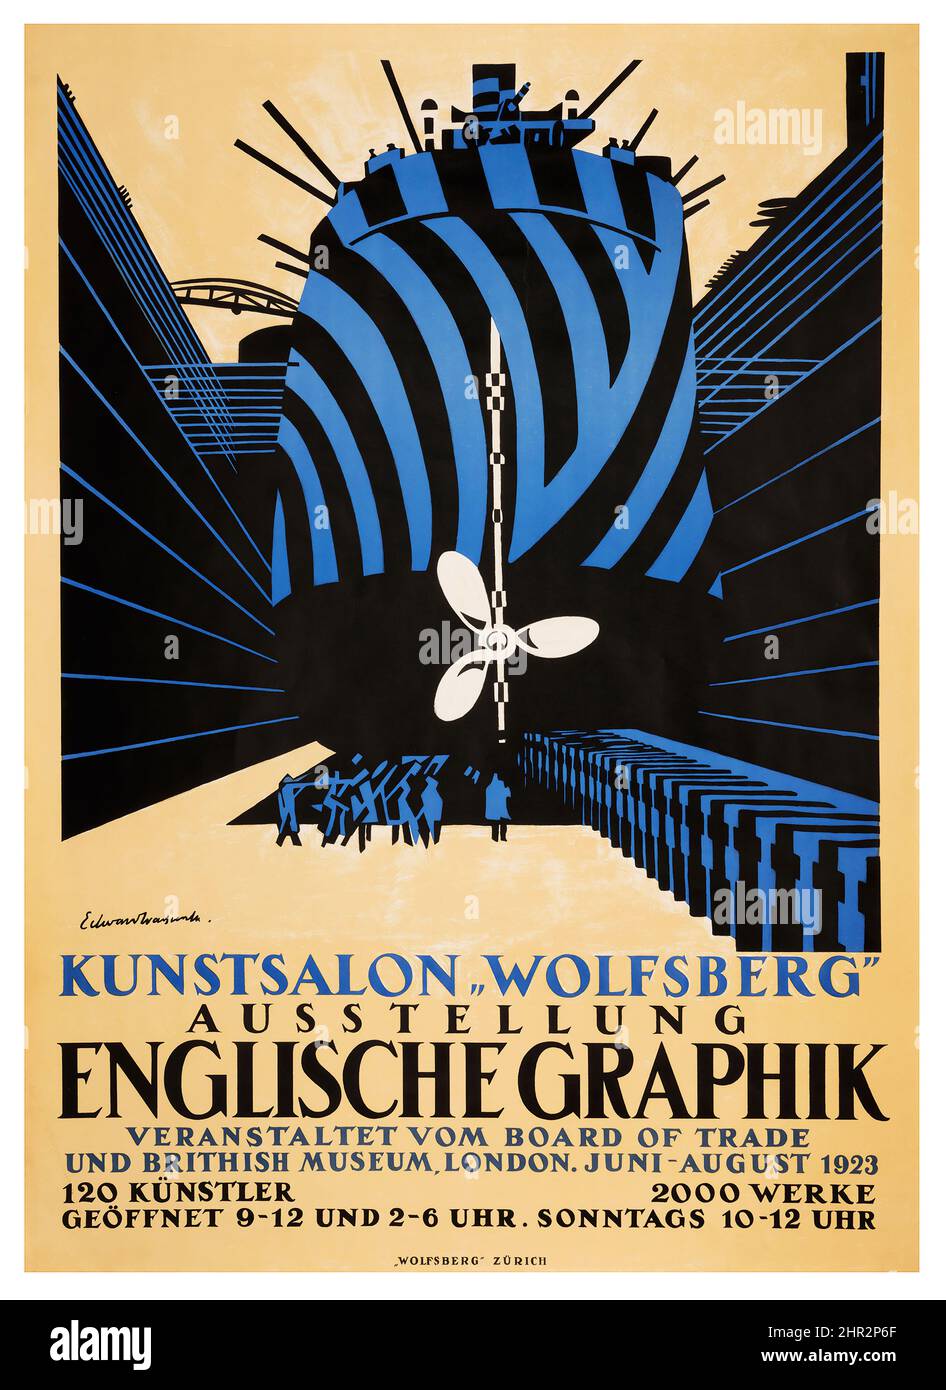 EDWARD ALEXANDER WADSWORTH (1888-1949) ENGLISCHE GRAPHIK Wolfsberg - affiche publicitaire vintage Banque D'Images